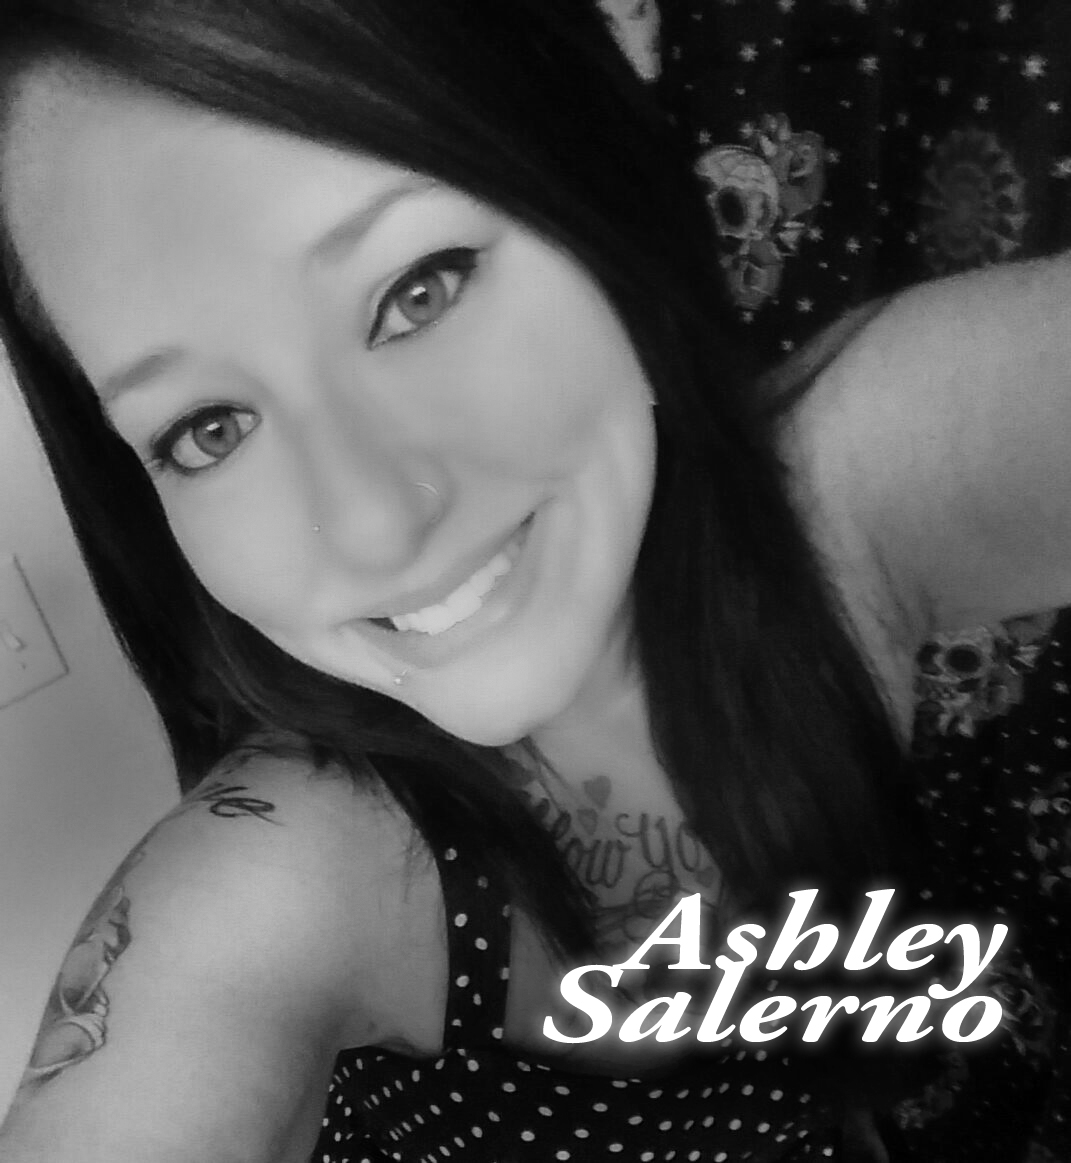 Ashley Salerno